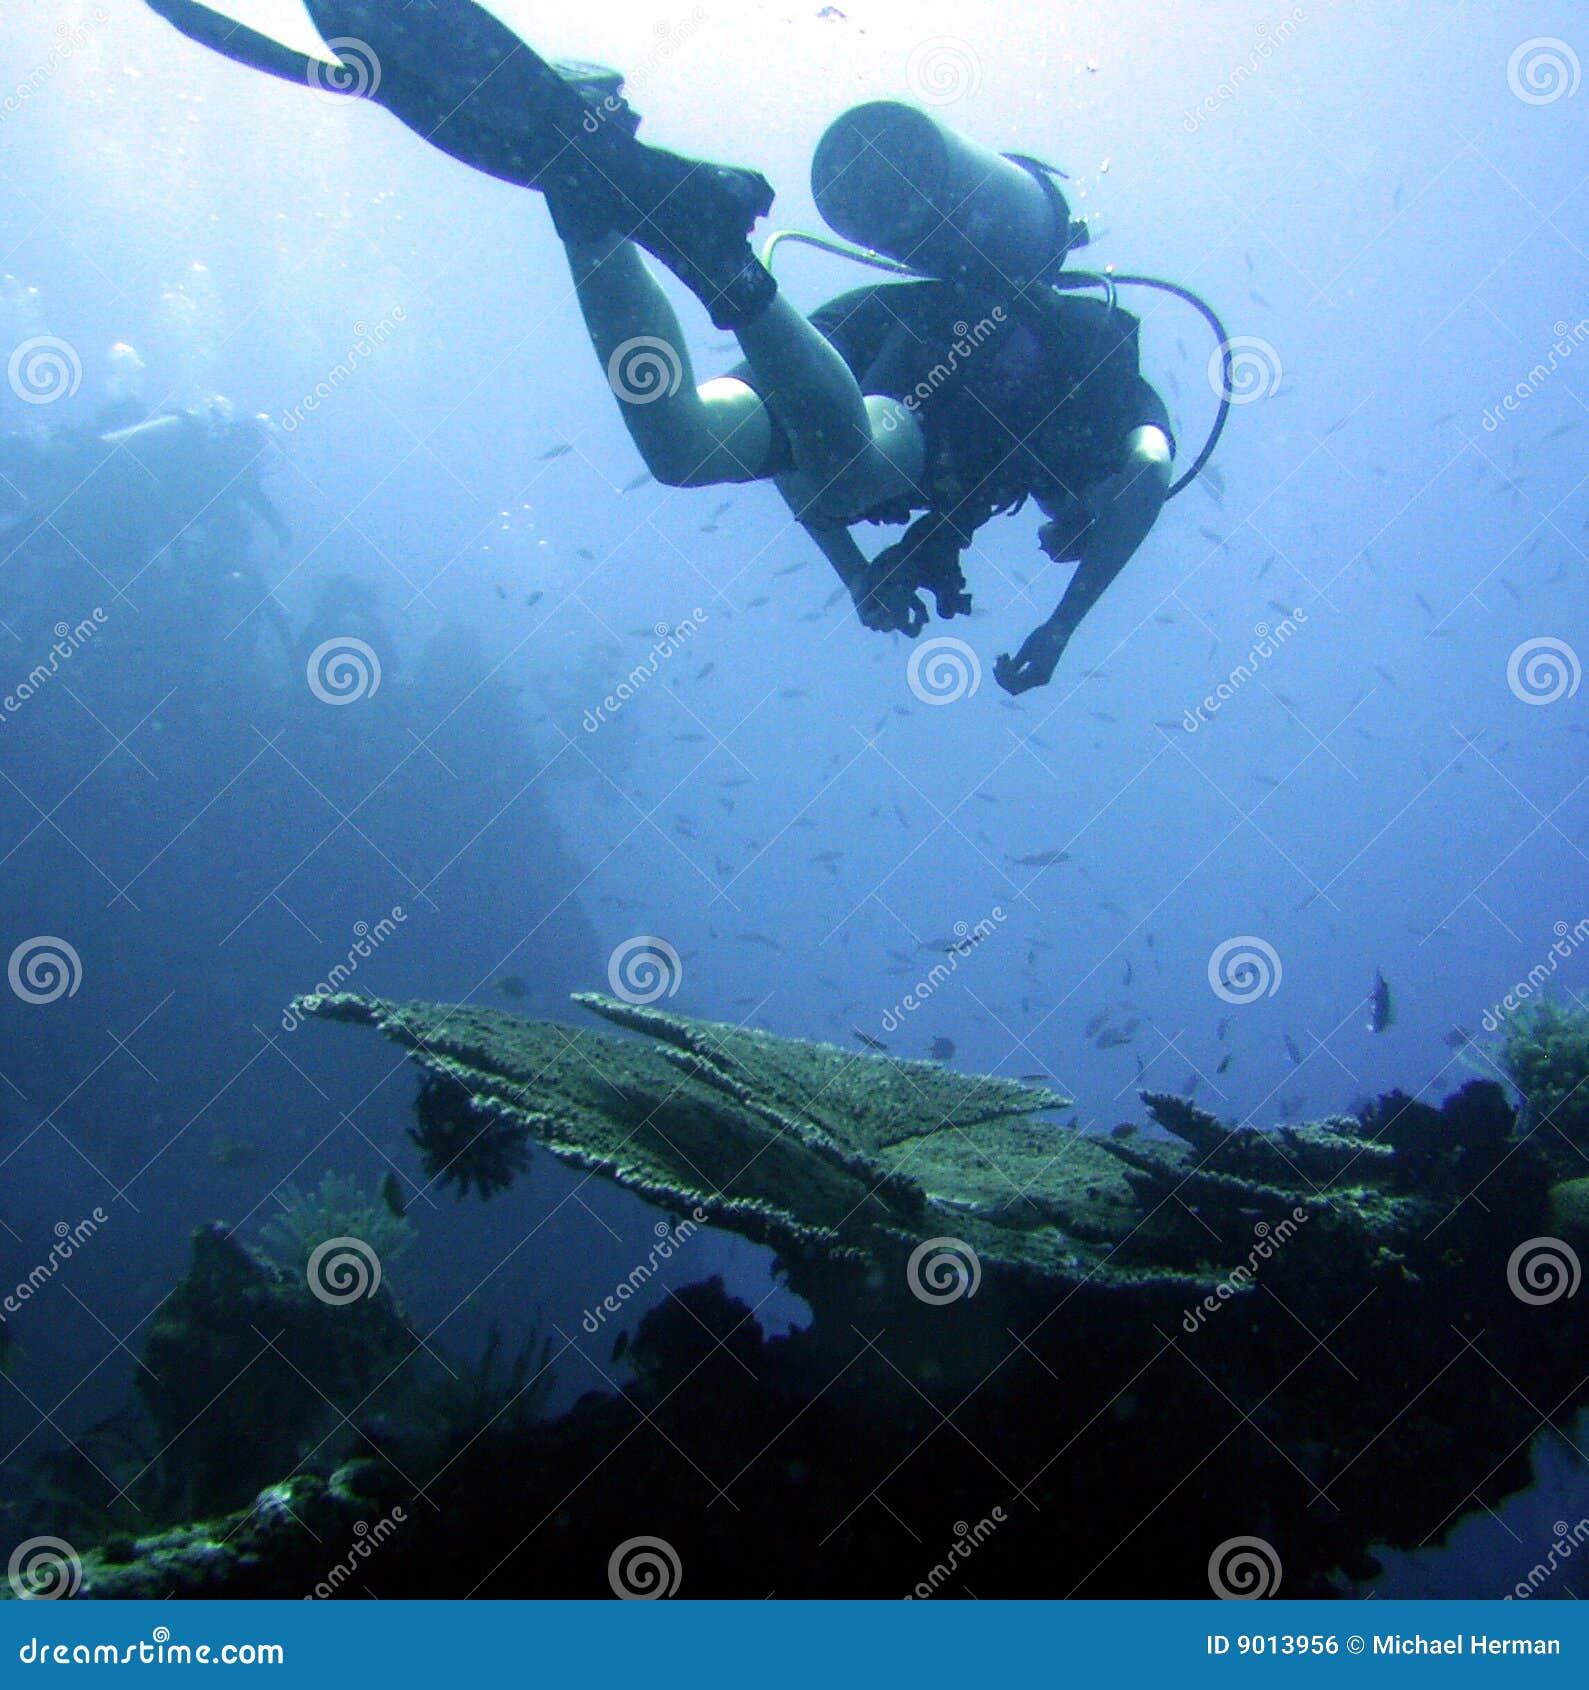 diver exploring wrecked ship